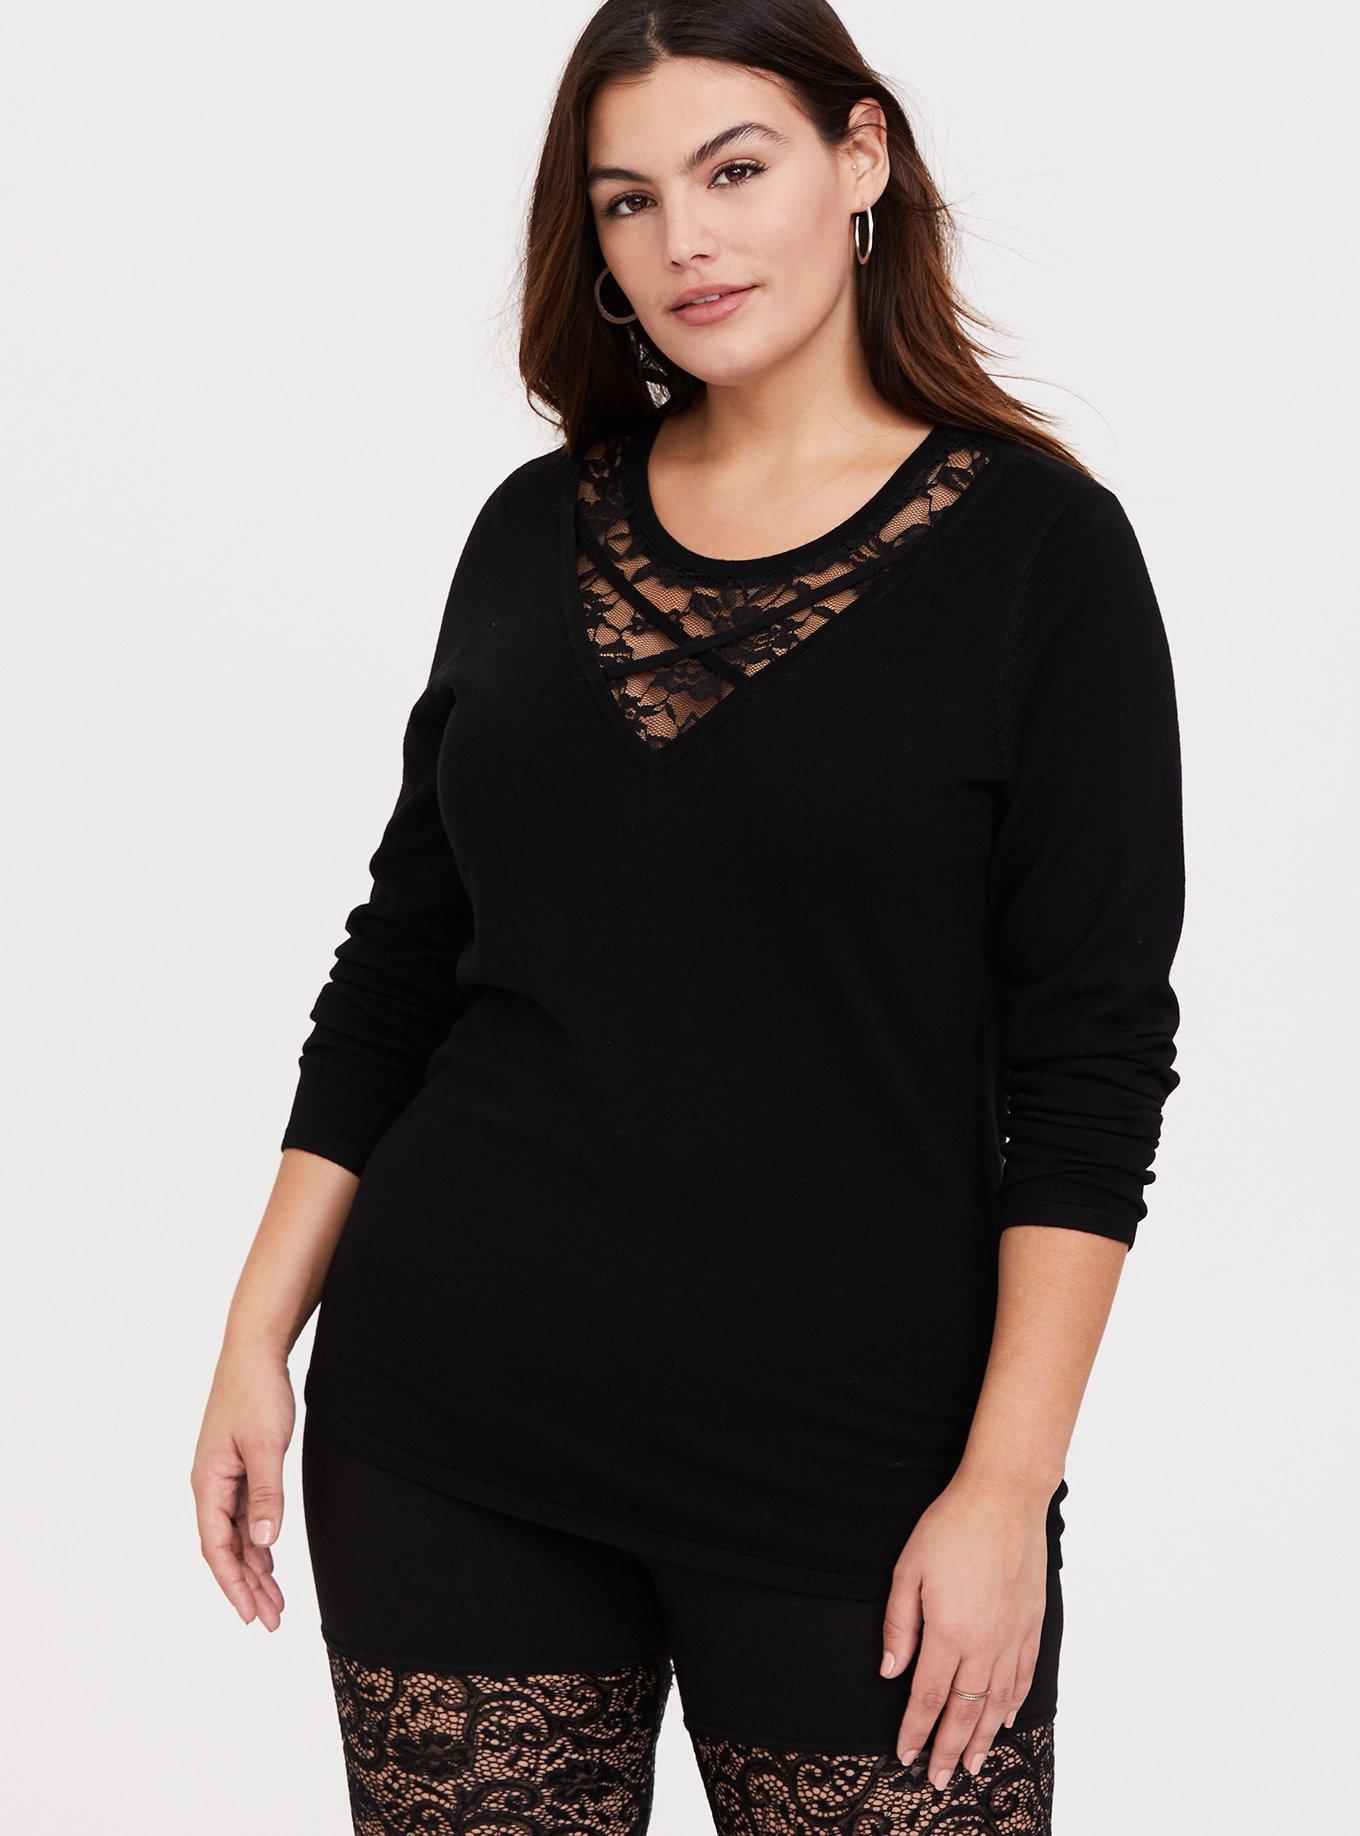 Plus Size - Black Sweater-Knit & Lace Front Crisscross Top - Torrid